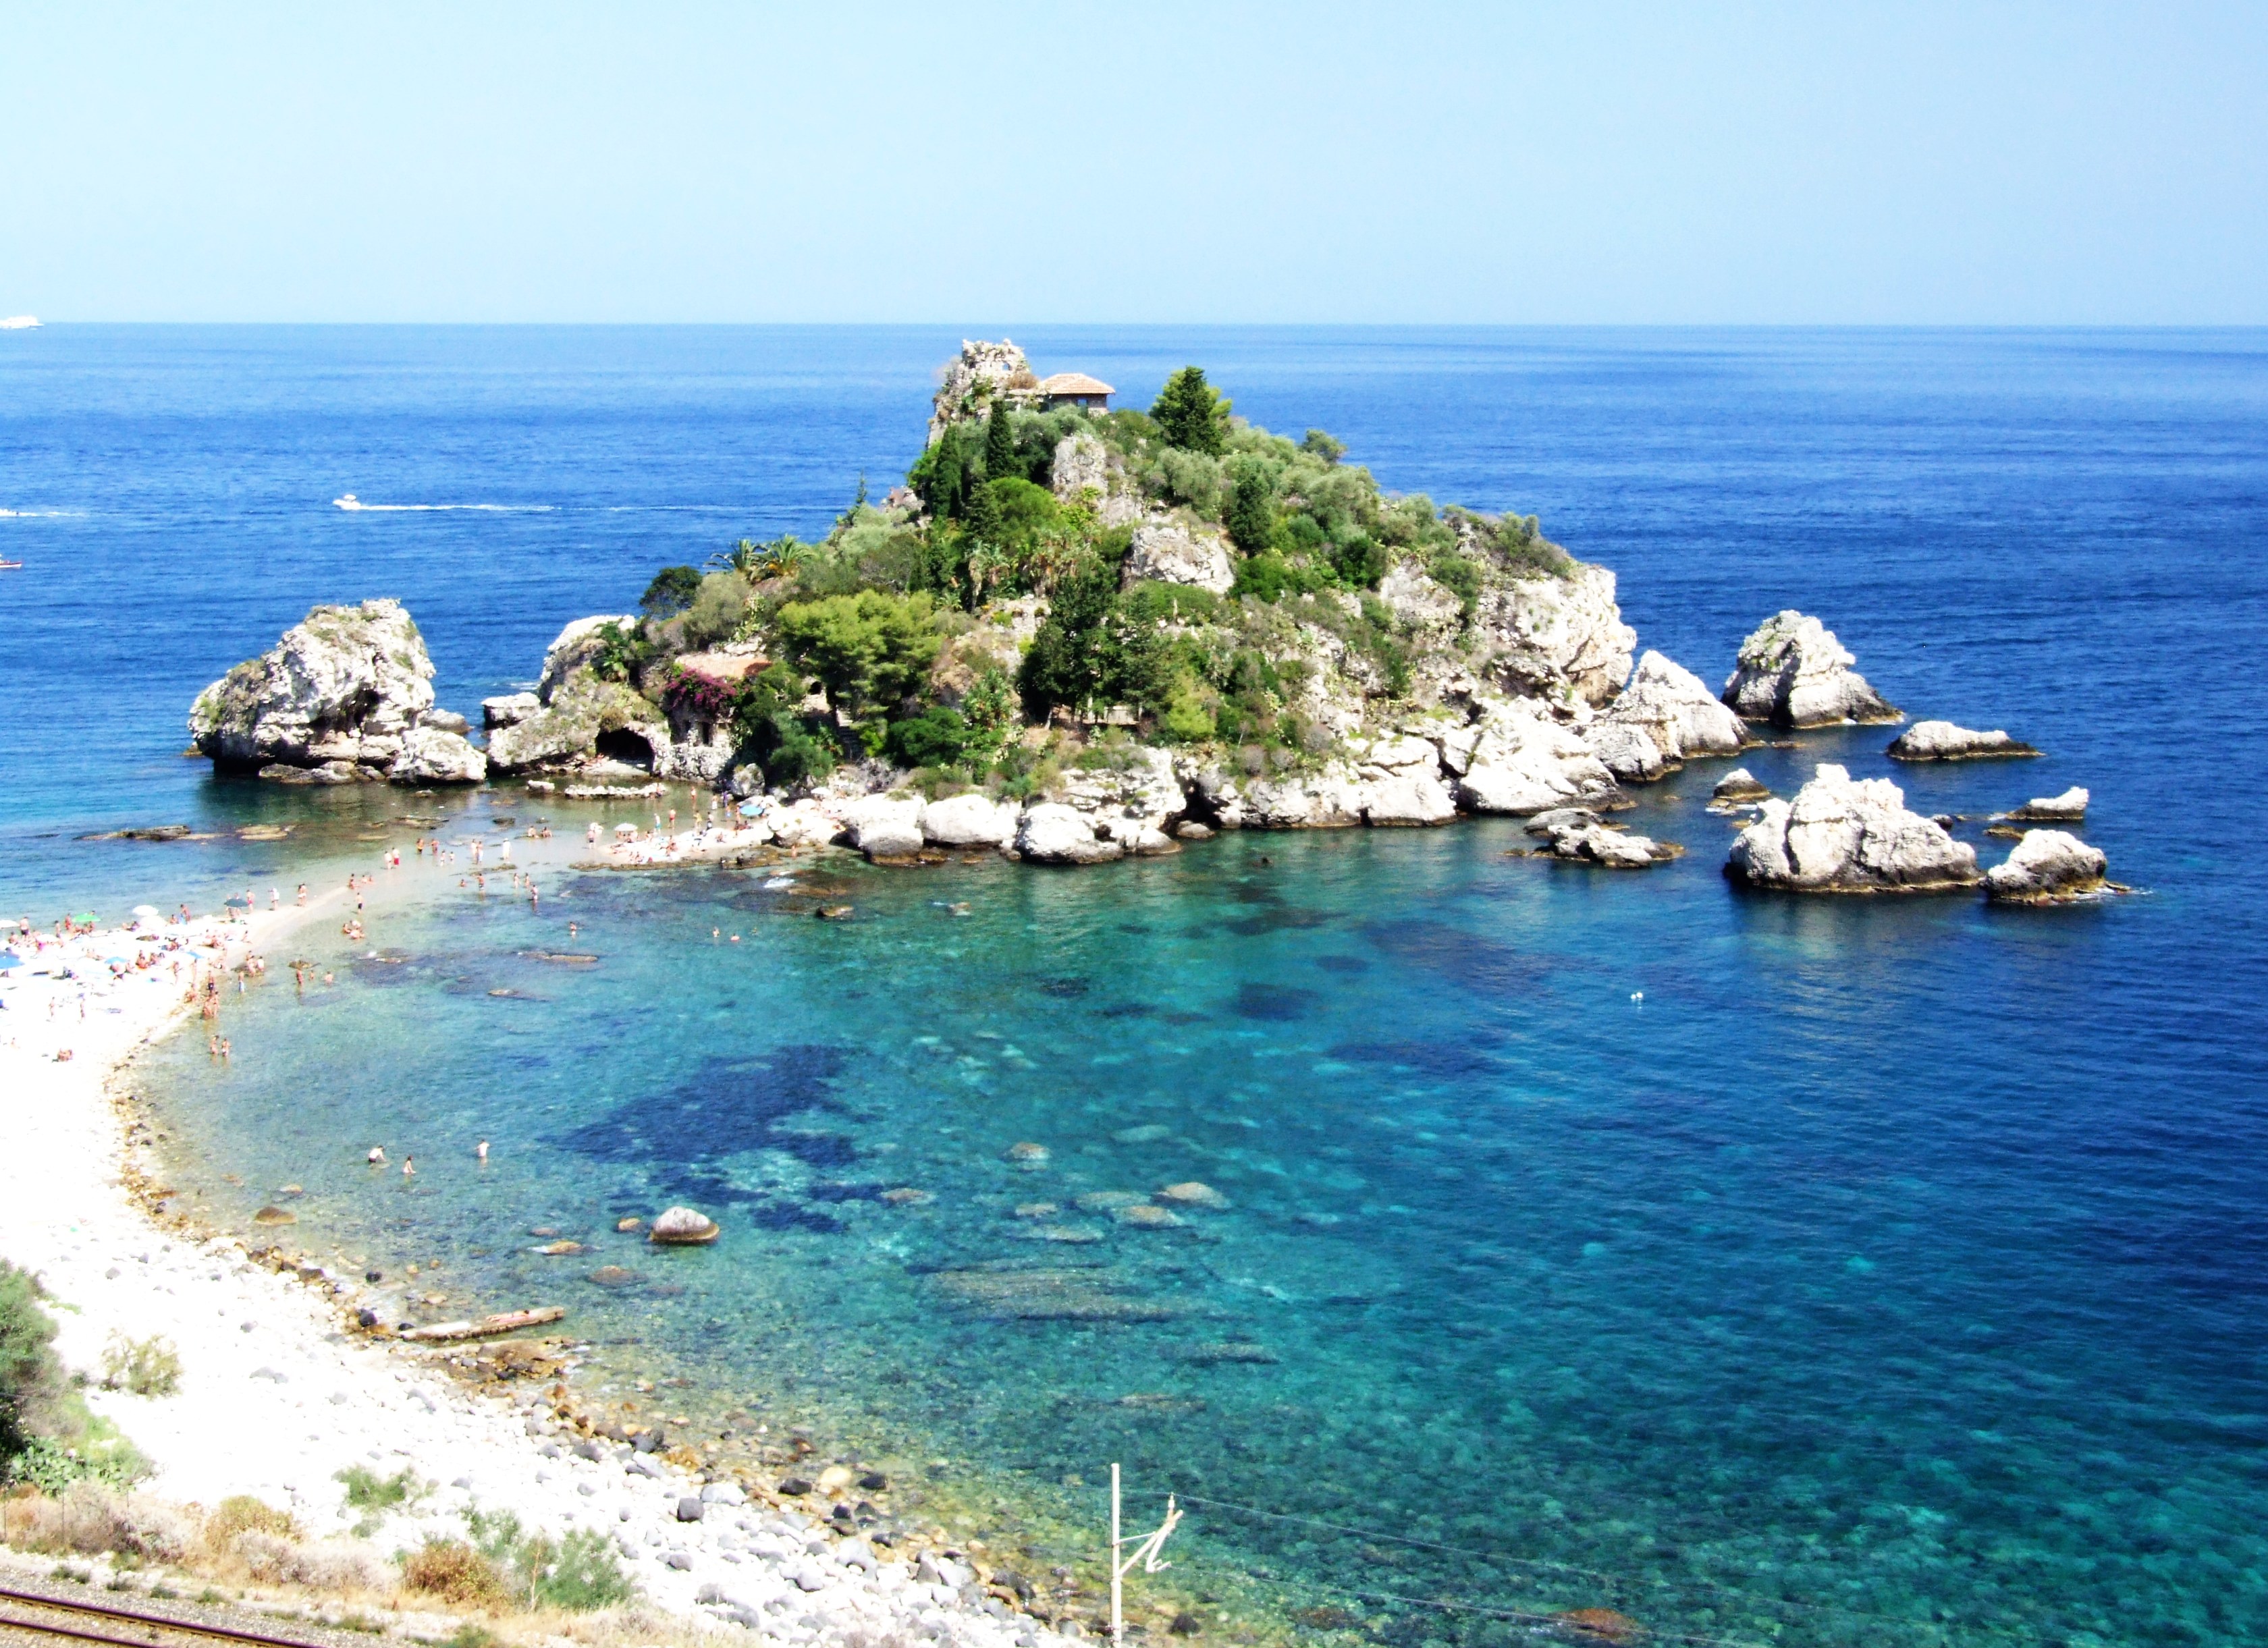 Isola bella-taormina-messina-sicilia-italy- creative commons by gnuckx photo